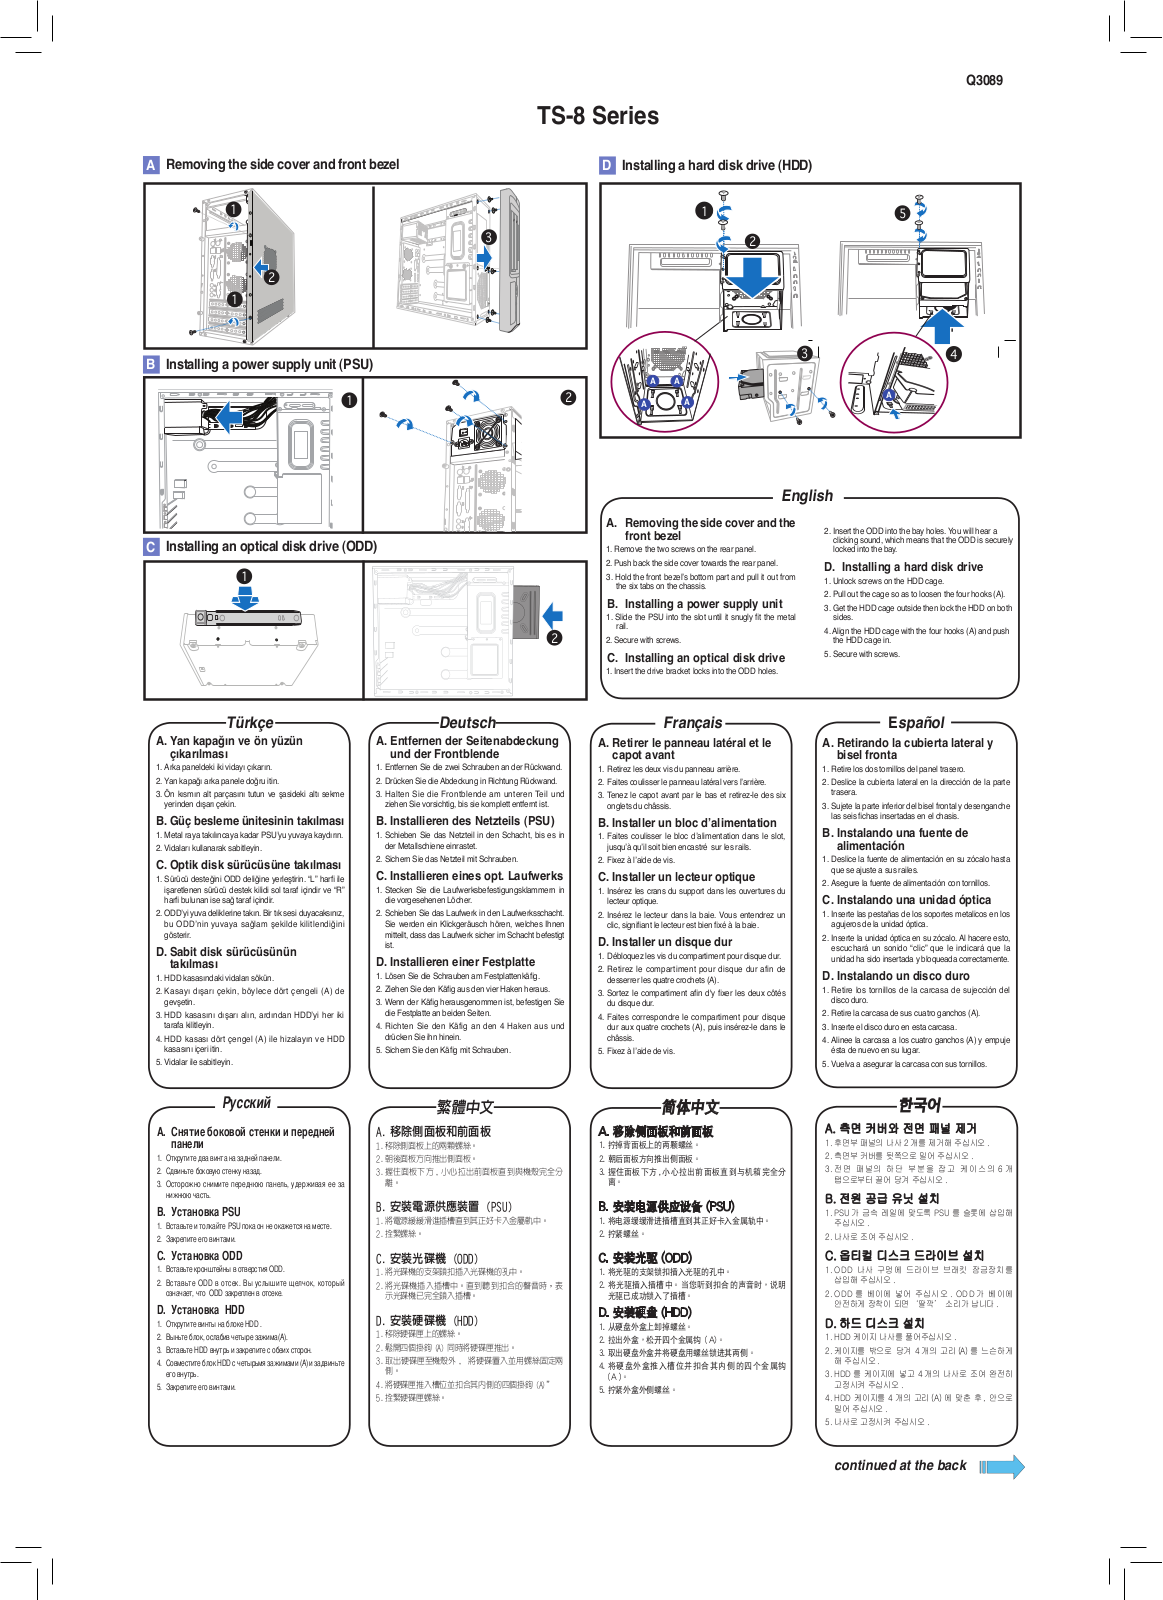 ASUS TS-8B User Manual